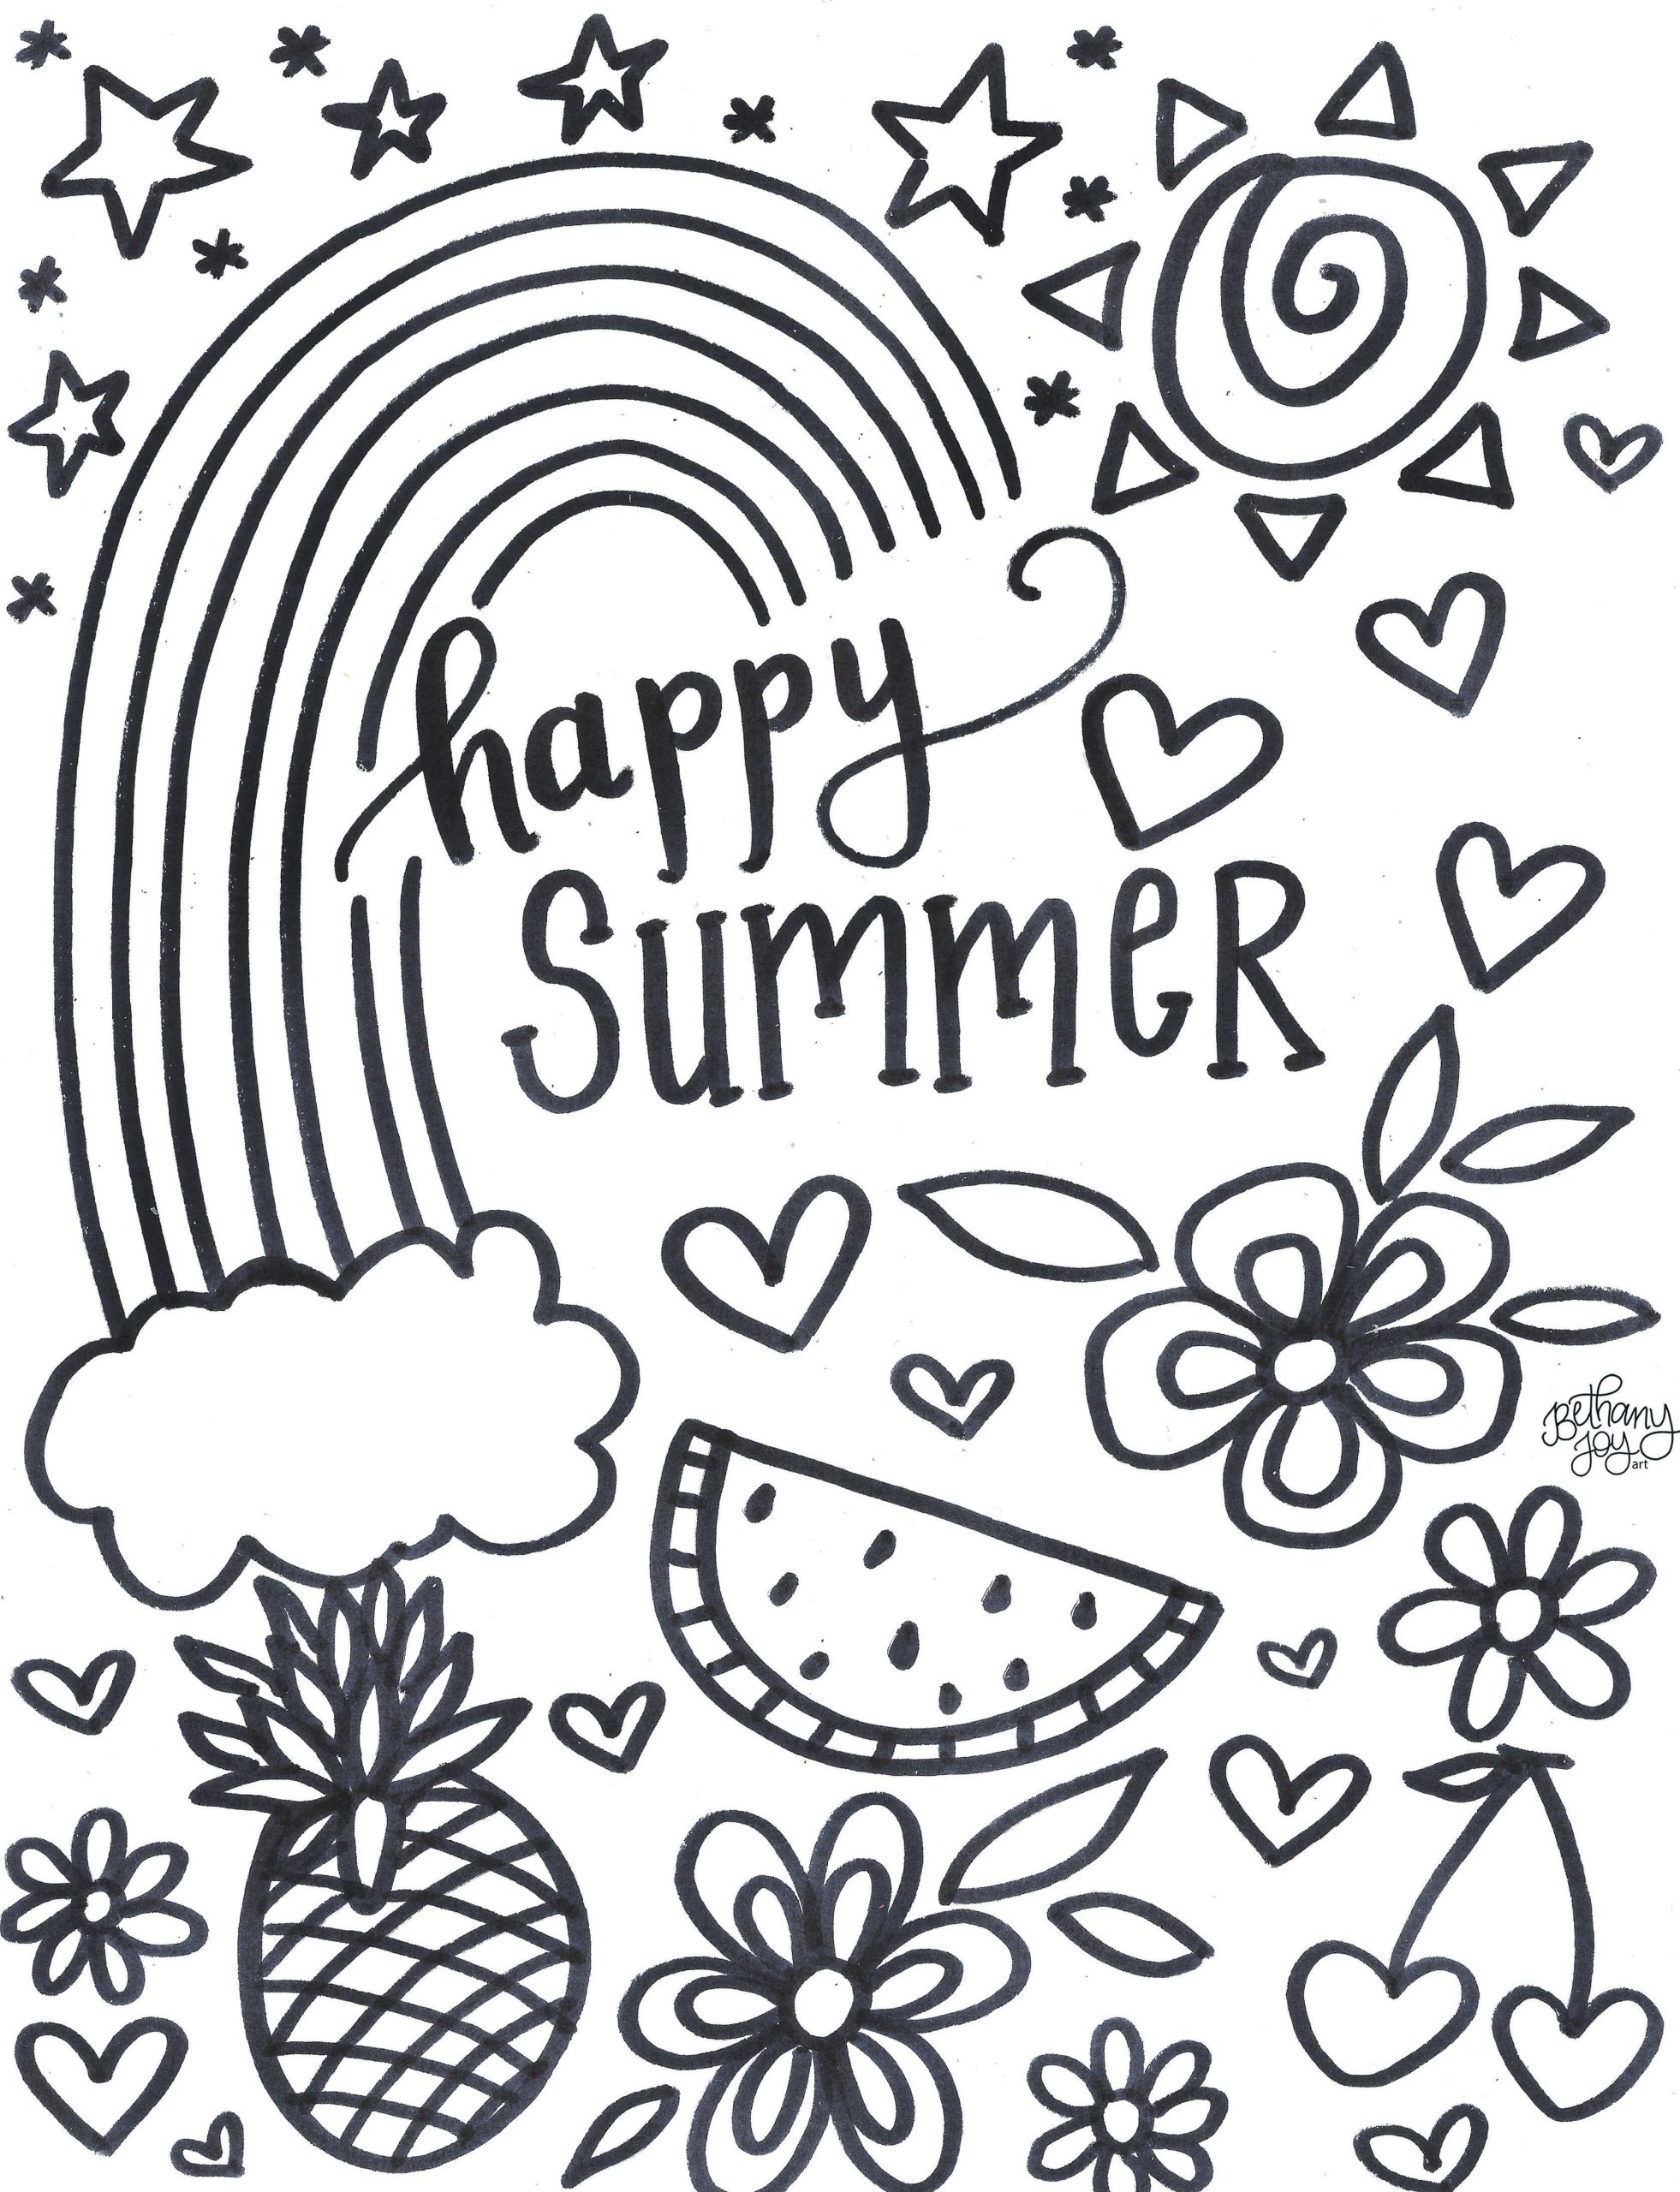 Cartaz Feliz Verão para colorir